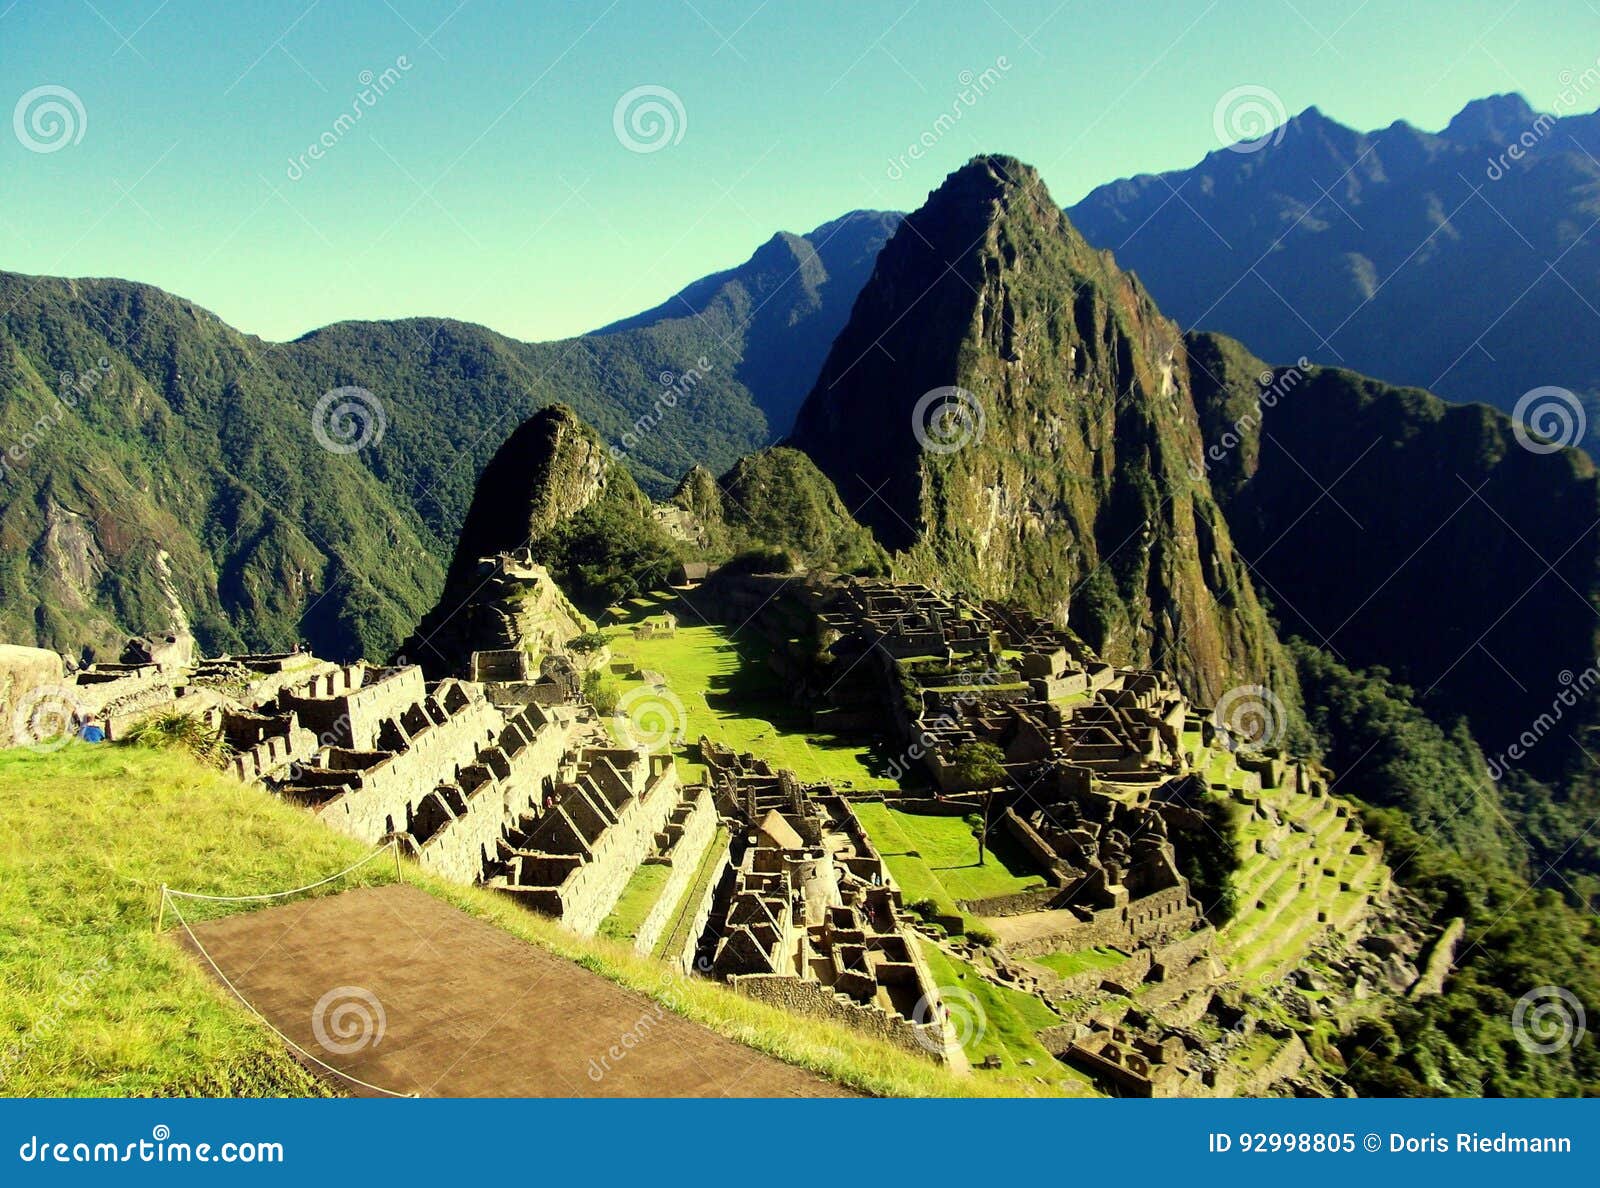 machu picchu peru inca ruins world wonder southamerica